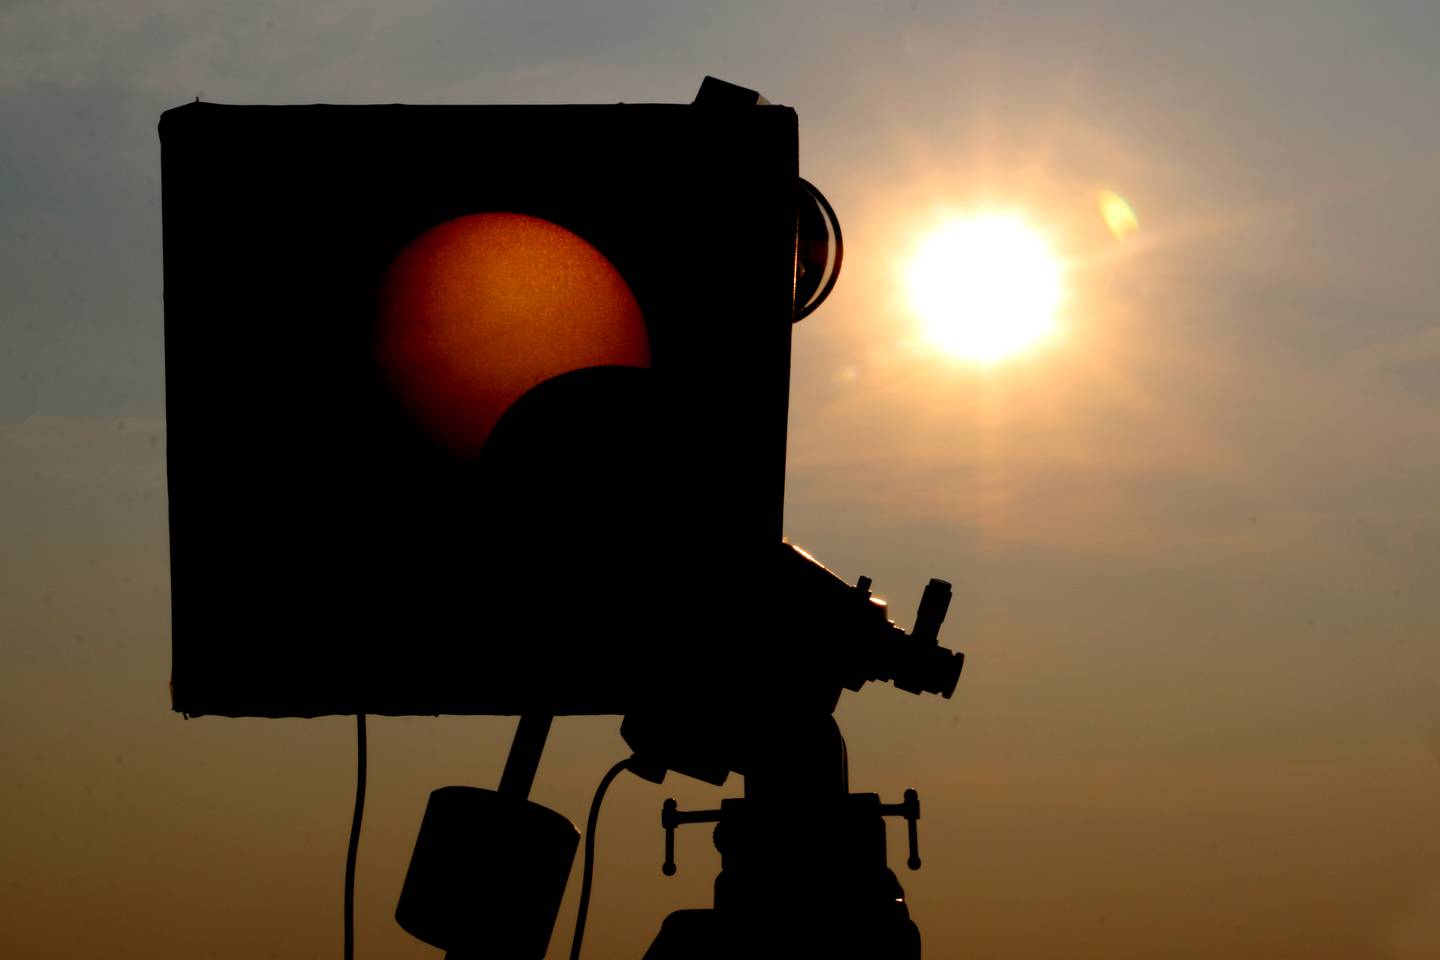 Durante un eclipse anular solar requiere algunos preparativos y cuidados para resguardar ojos y equipos fotográficos. Fotografía: (Shutterstock)